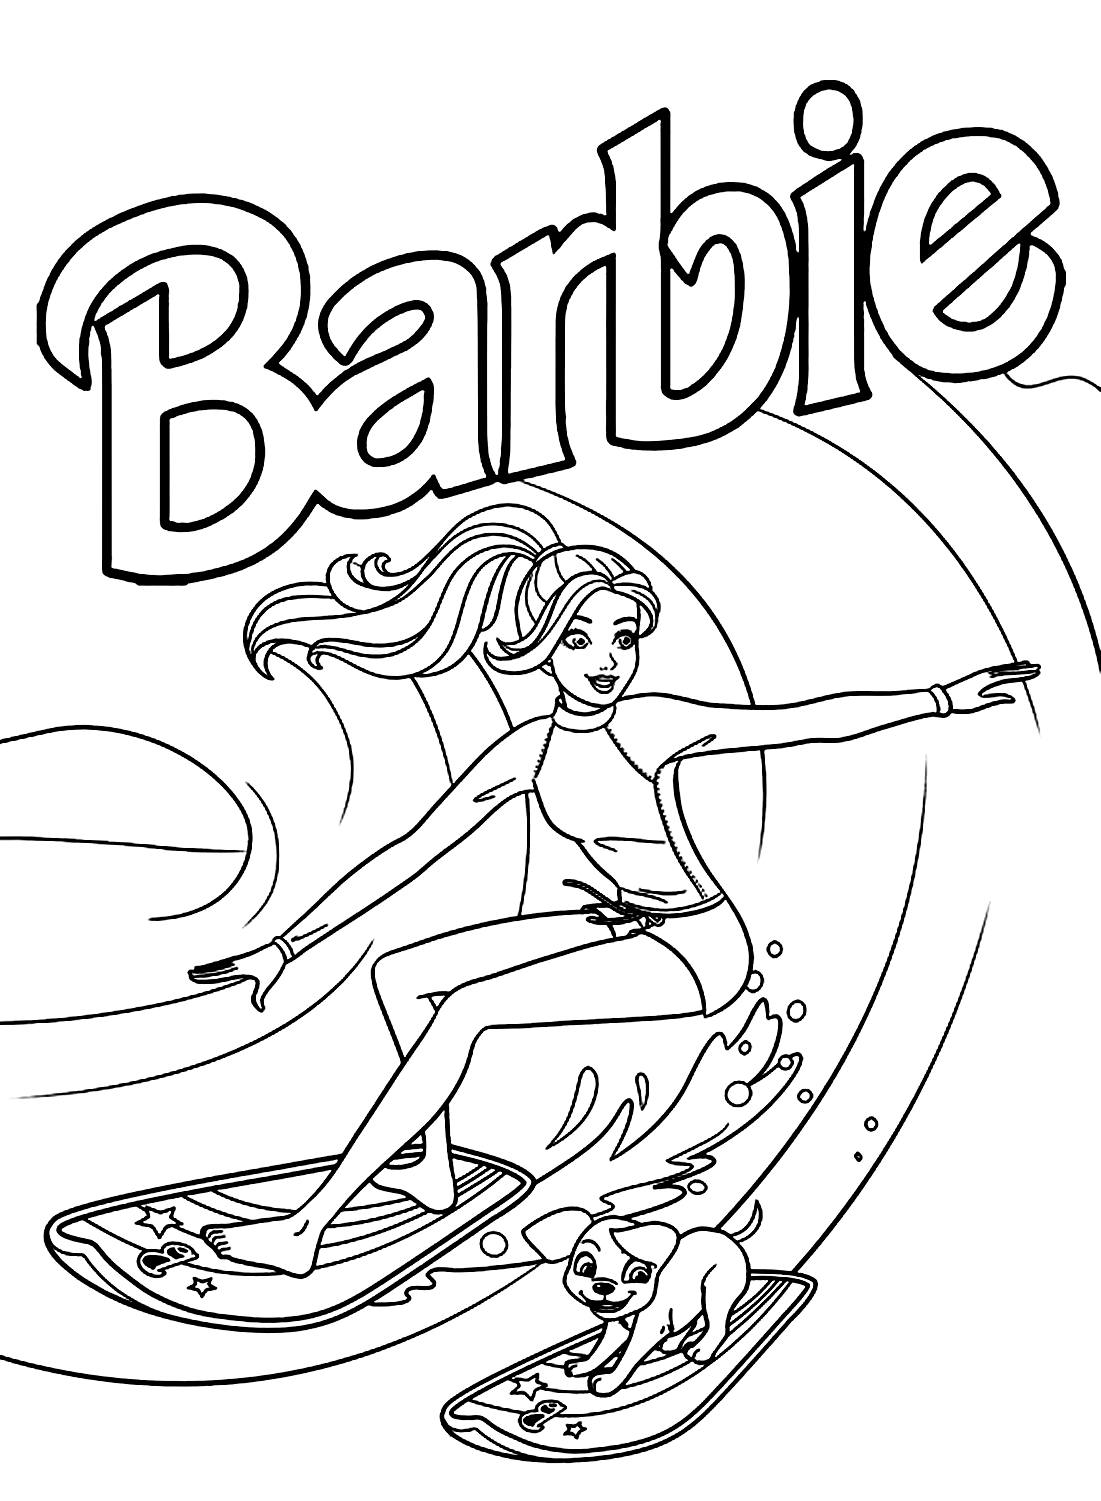 Página para colorear de Barbie surfeando de Barbie